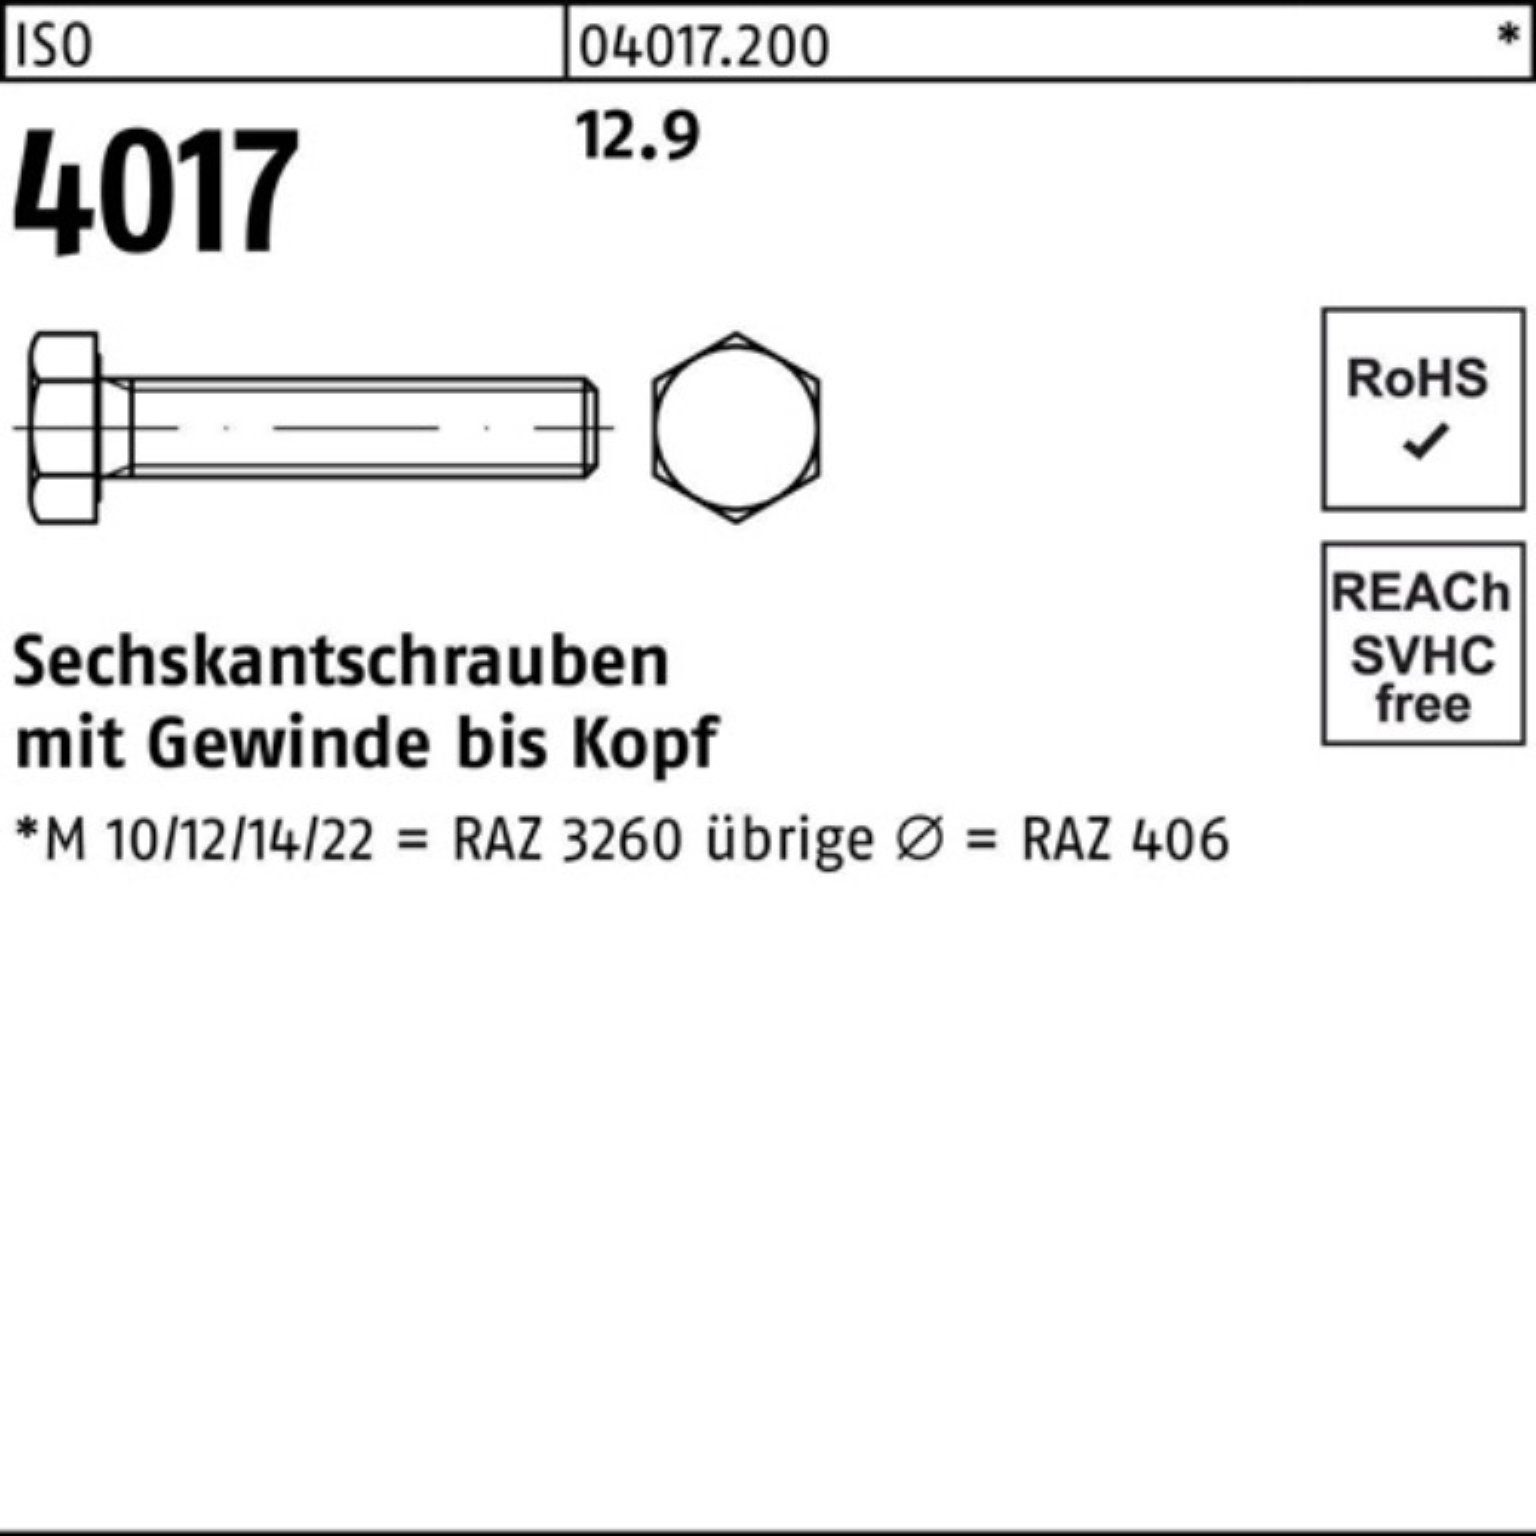 Bufab Sechskantschraube Stück 4017 12.9 Sechskantschraube M24x 100er Pack ISO 70 40 25 VG ISO